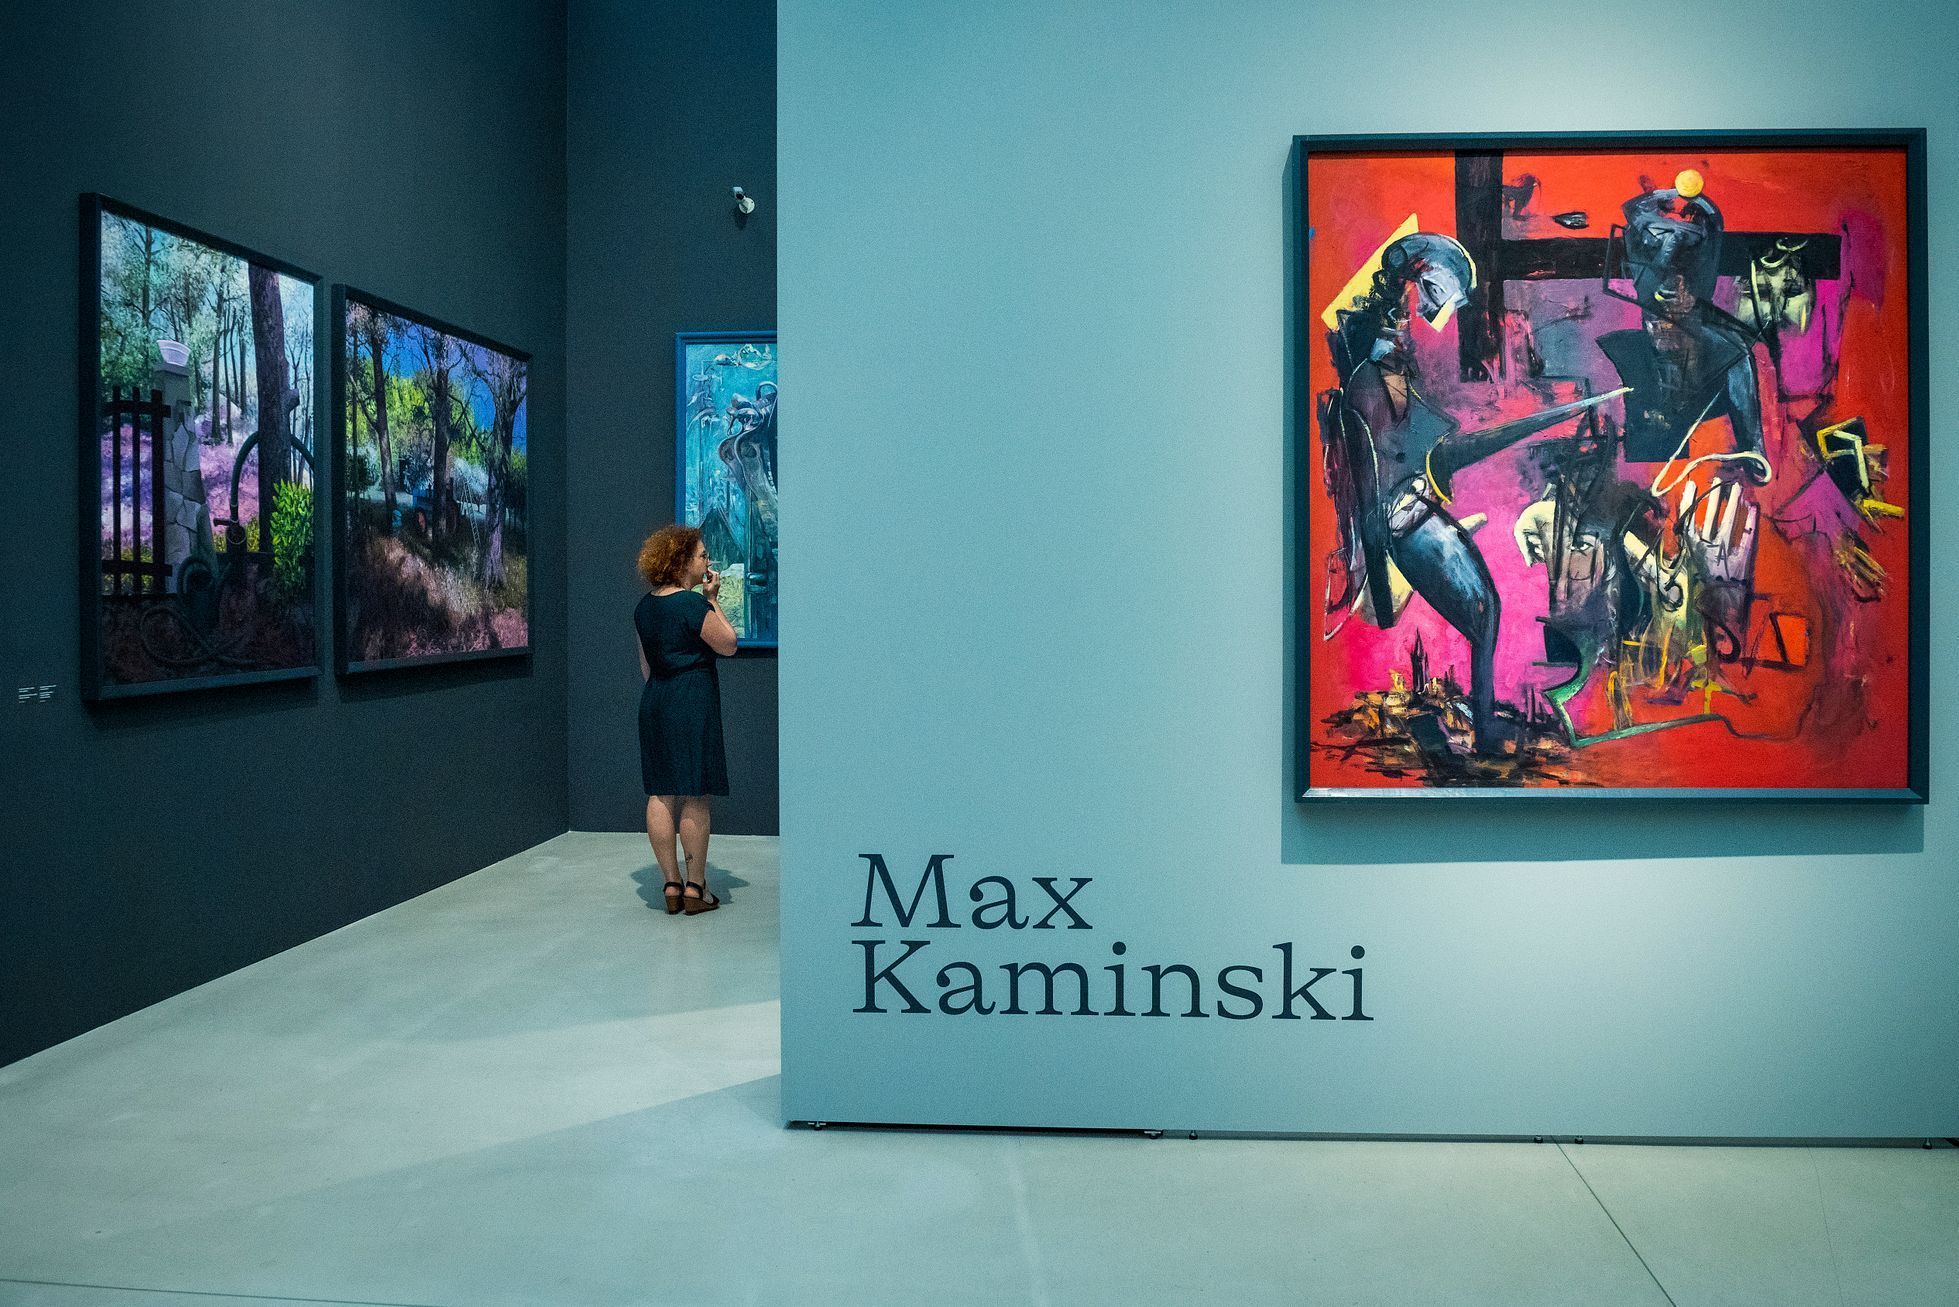 Malíř Max Kaminski